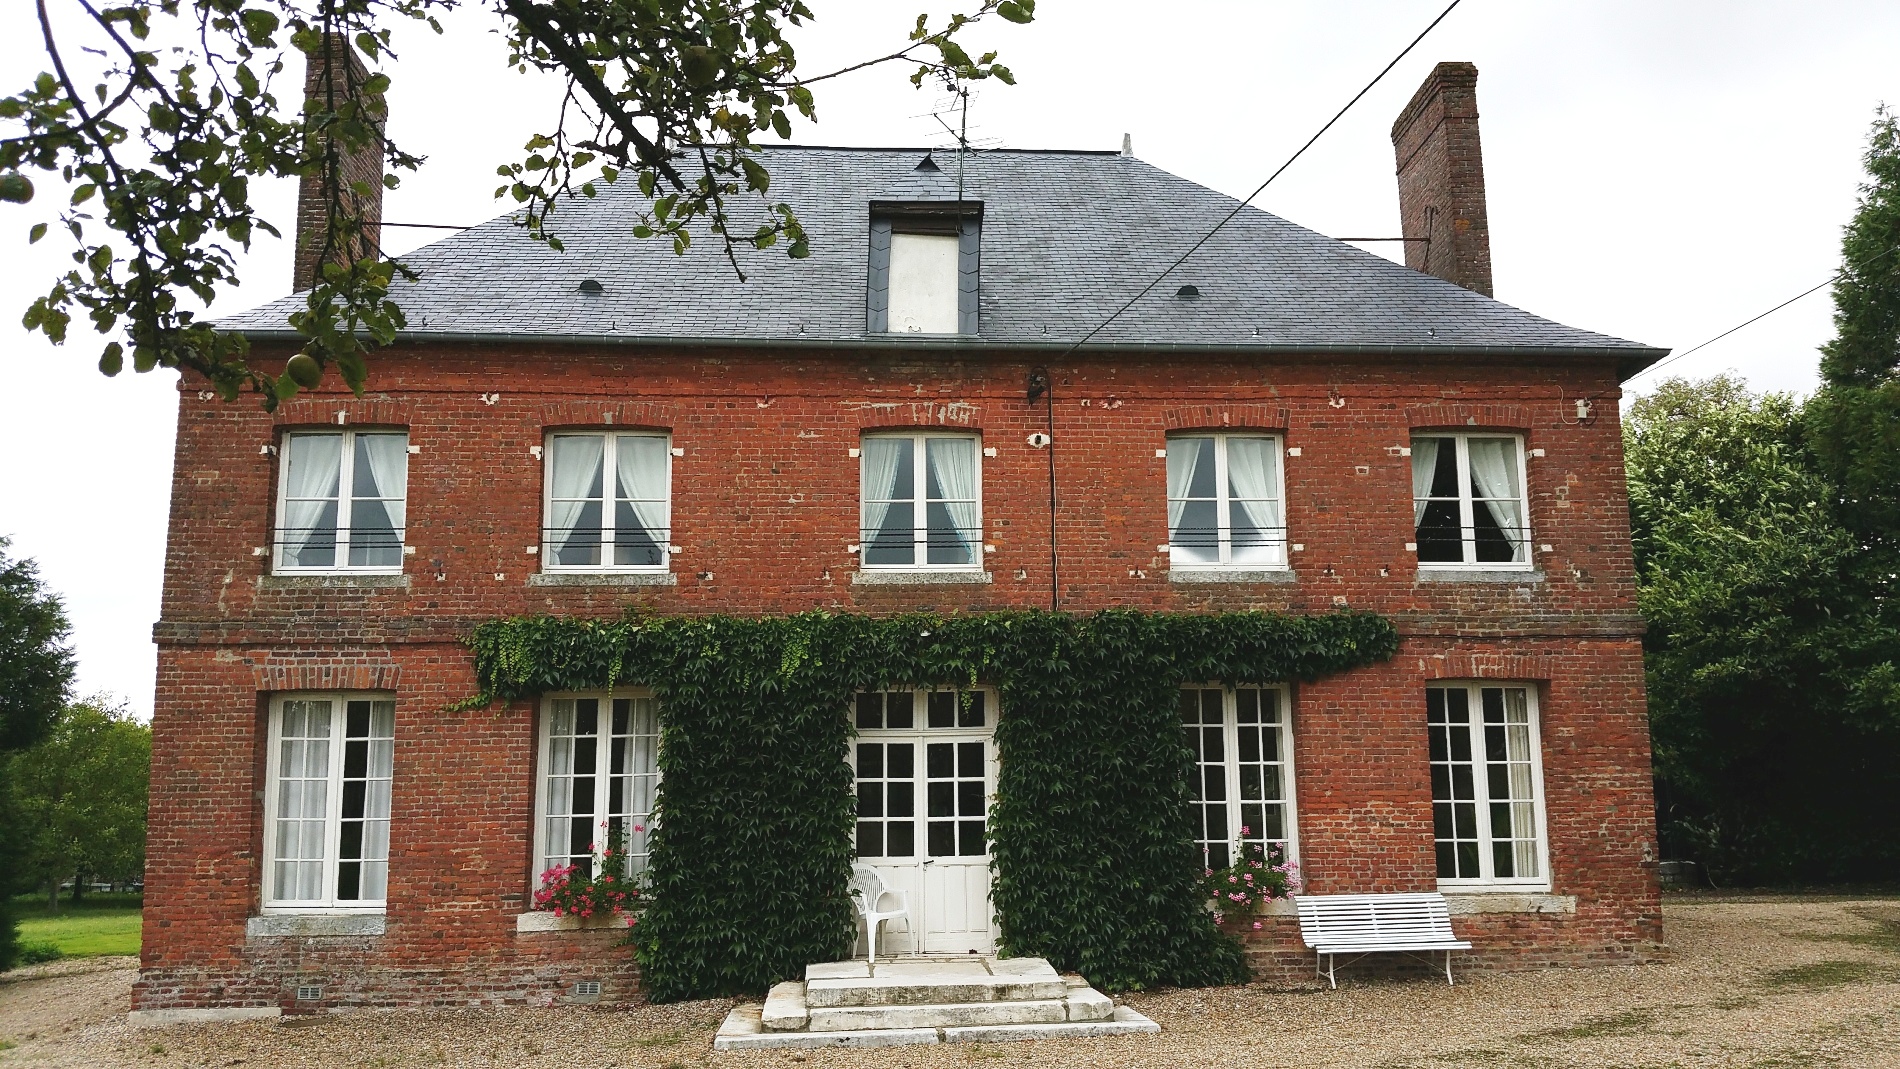 vente d'une belle maison de maître  Aux environs de Rouen, Haute Normandie, en bordure de forêt,